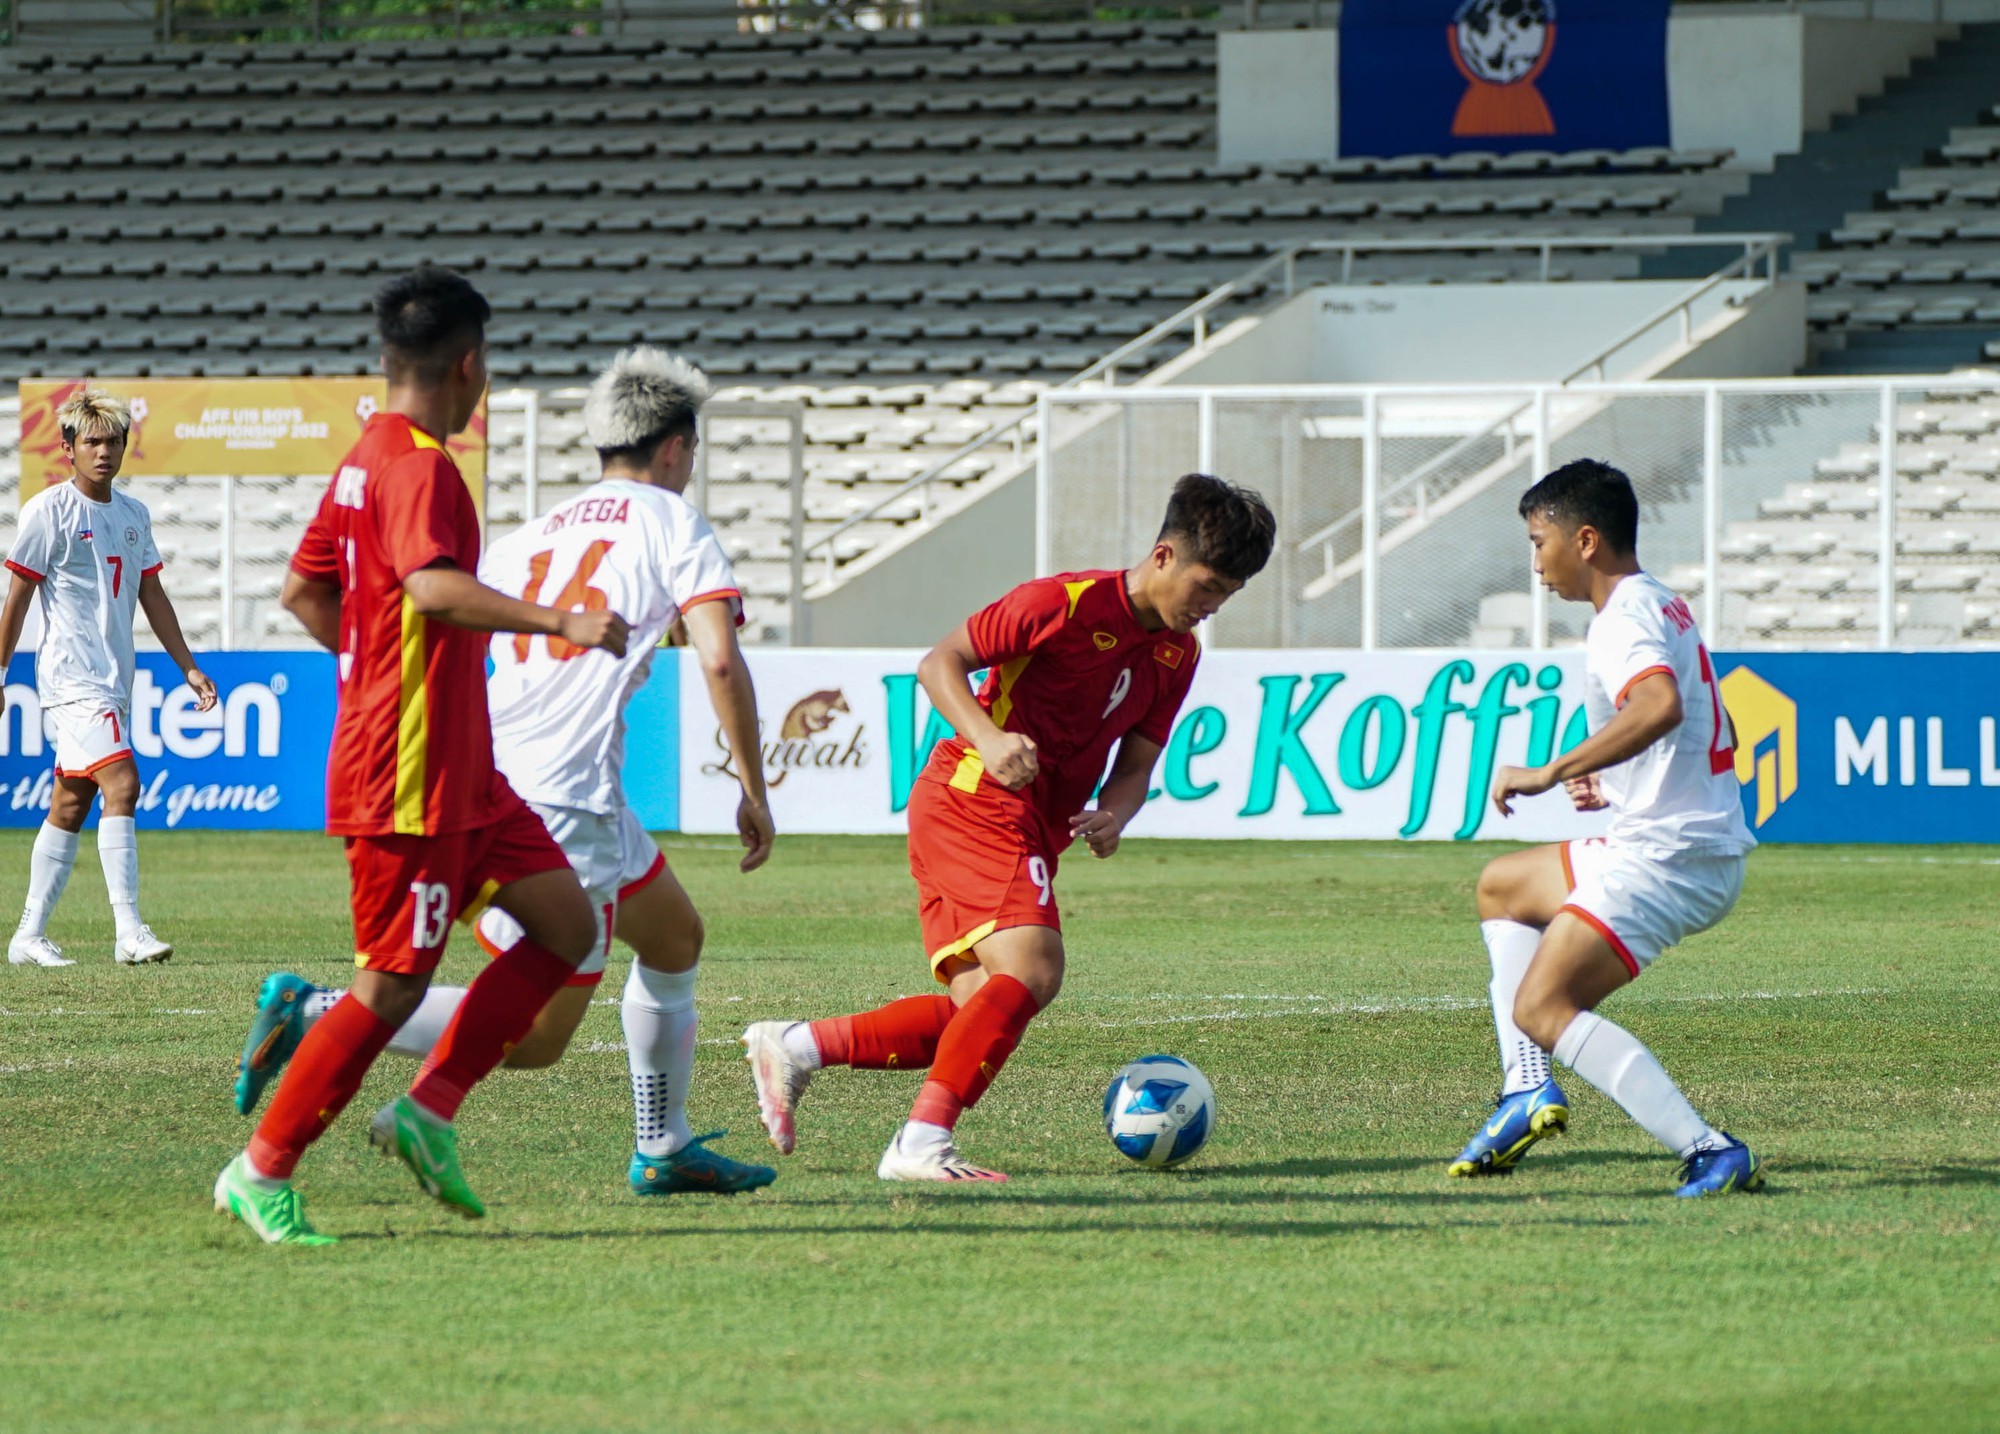 HLV Đinh Thế Nam chỉ ra hạn chế của U19 Việt Nam sau trận thắng đậm U19 Philippines - Ảnh 3.